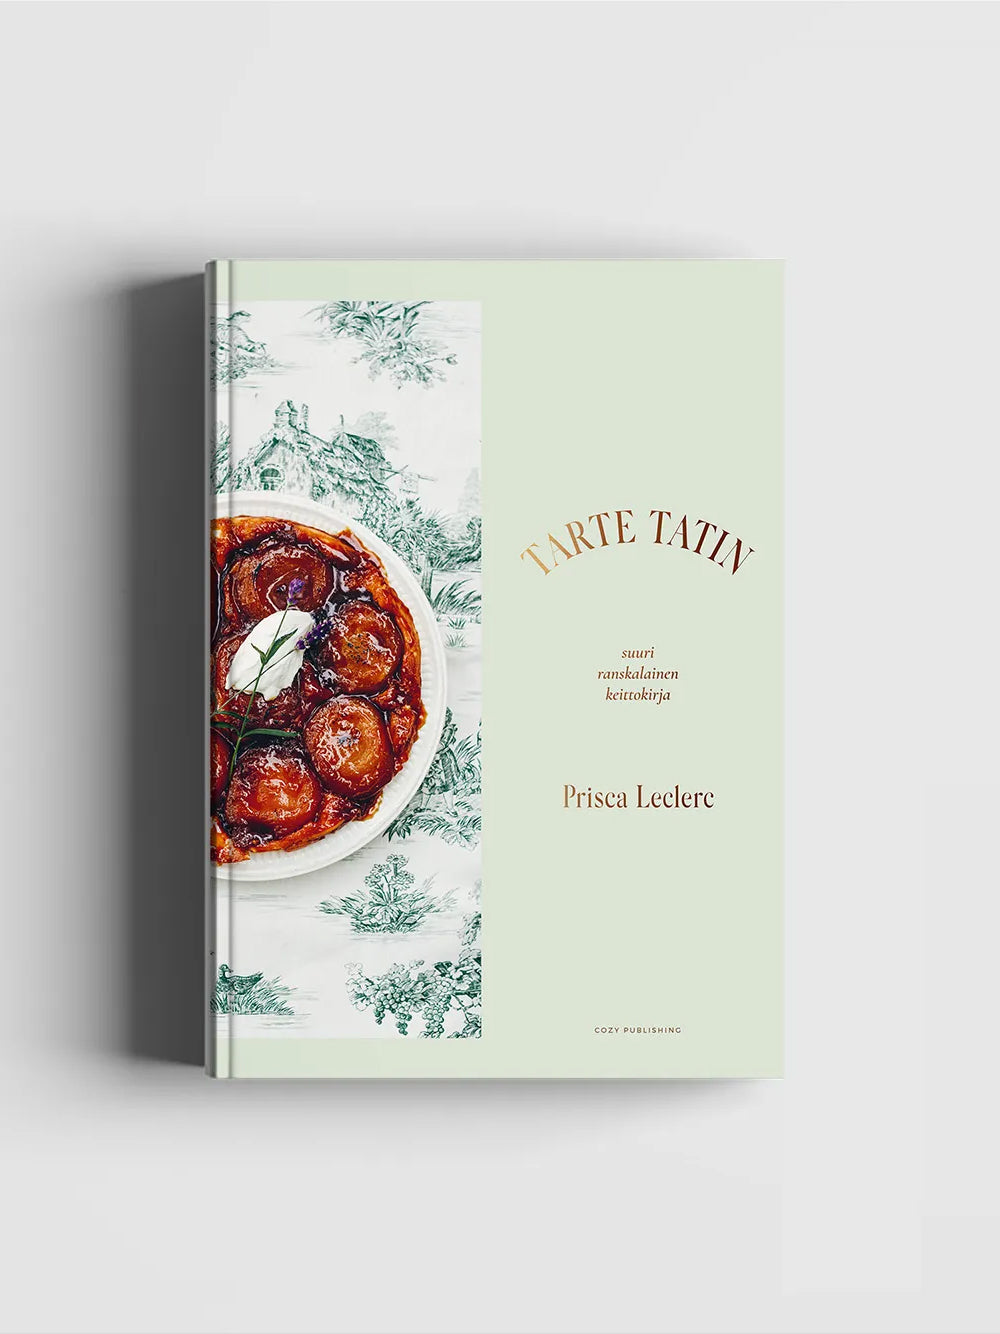 Tarte Tatin, Suuri ranskalainen keittokirja